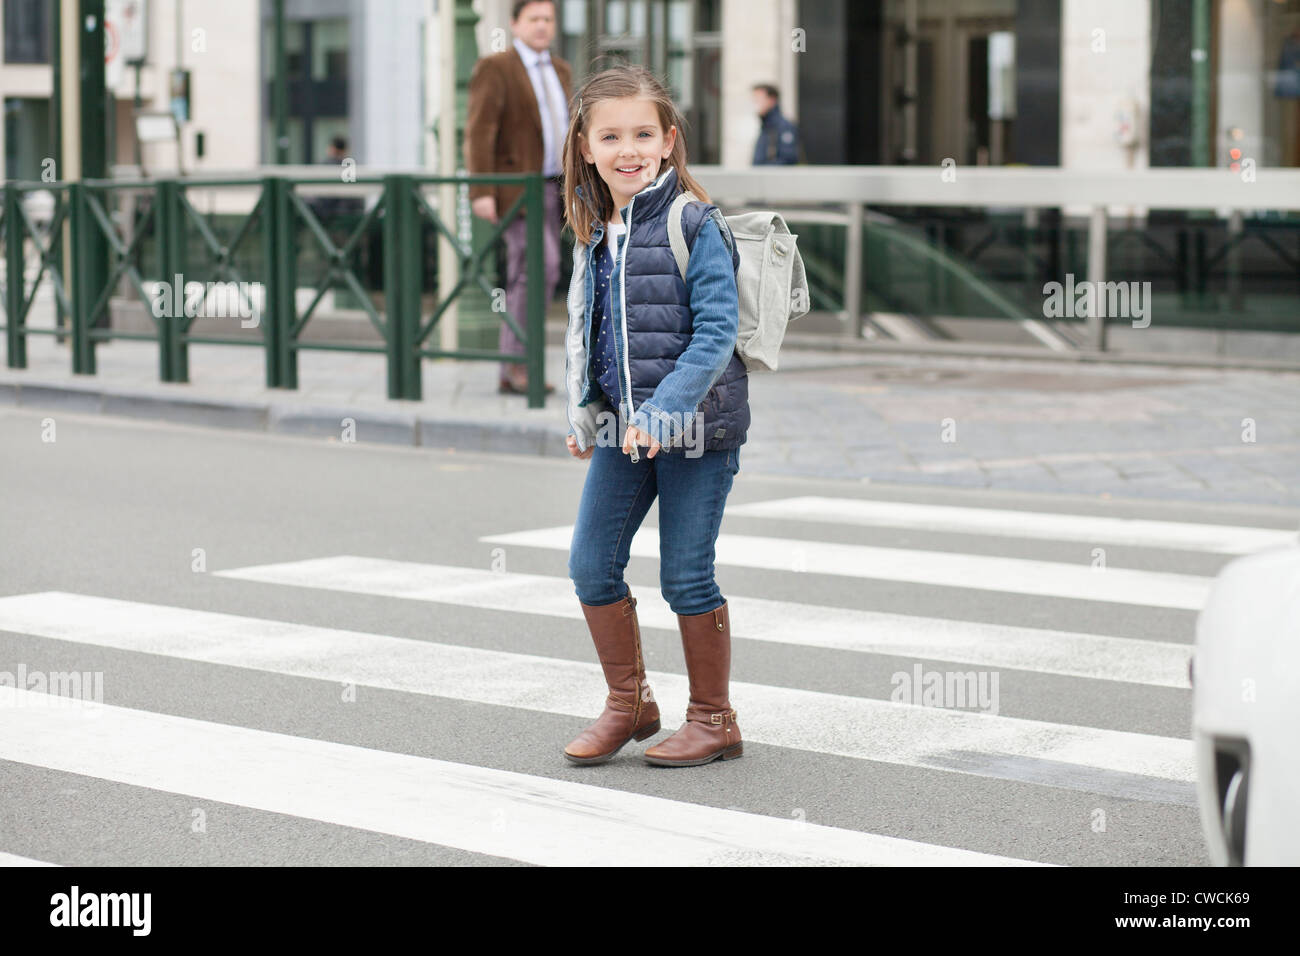 Schoolgirl crossing a road Stock Photo